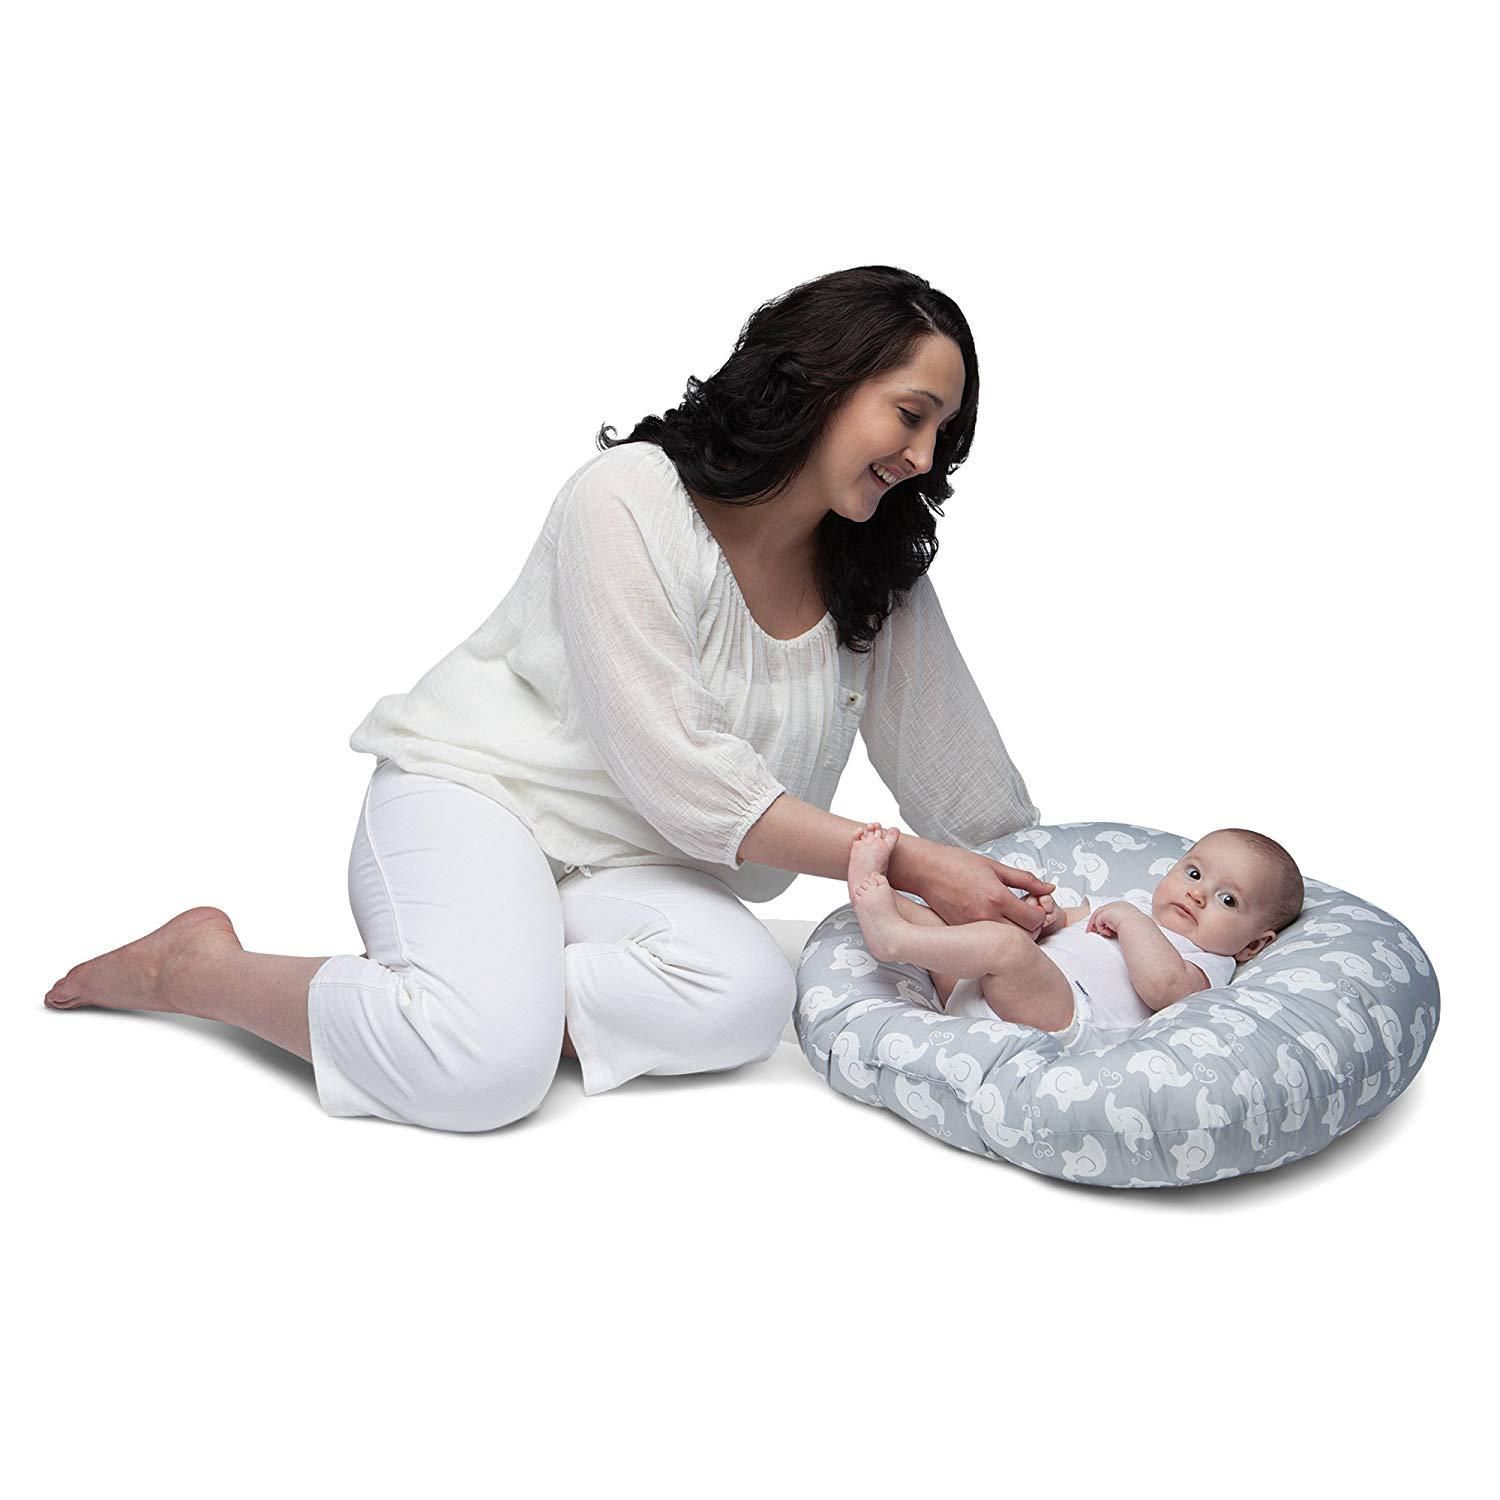 TS 超厚超柔软婴儿躺椅便携式 婴儿床上睡垫婴儿床中床详情图2